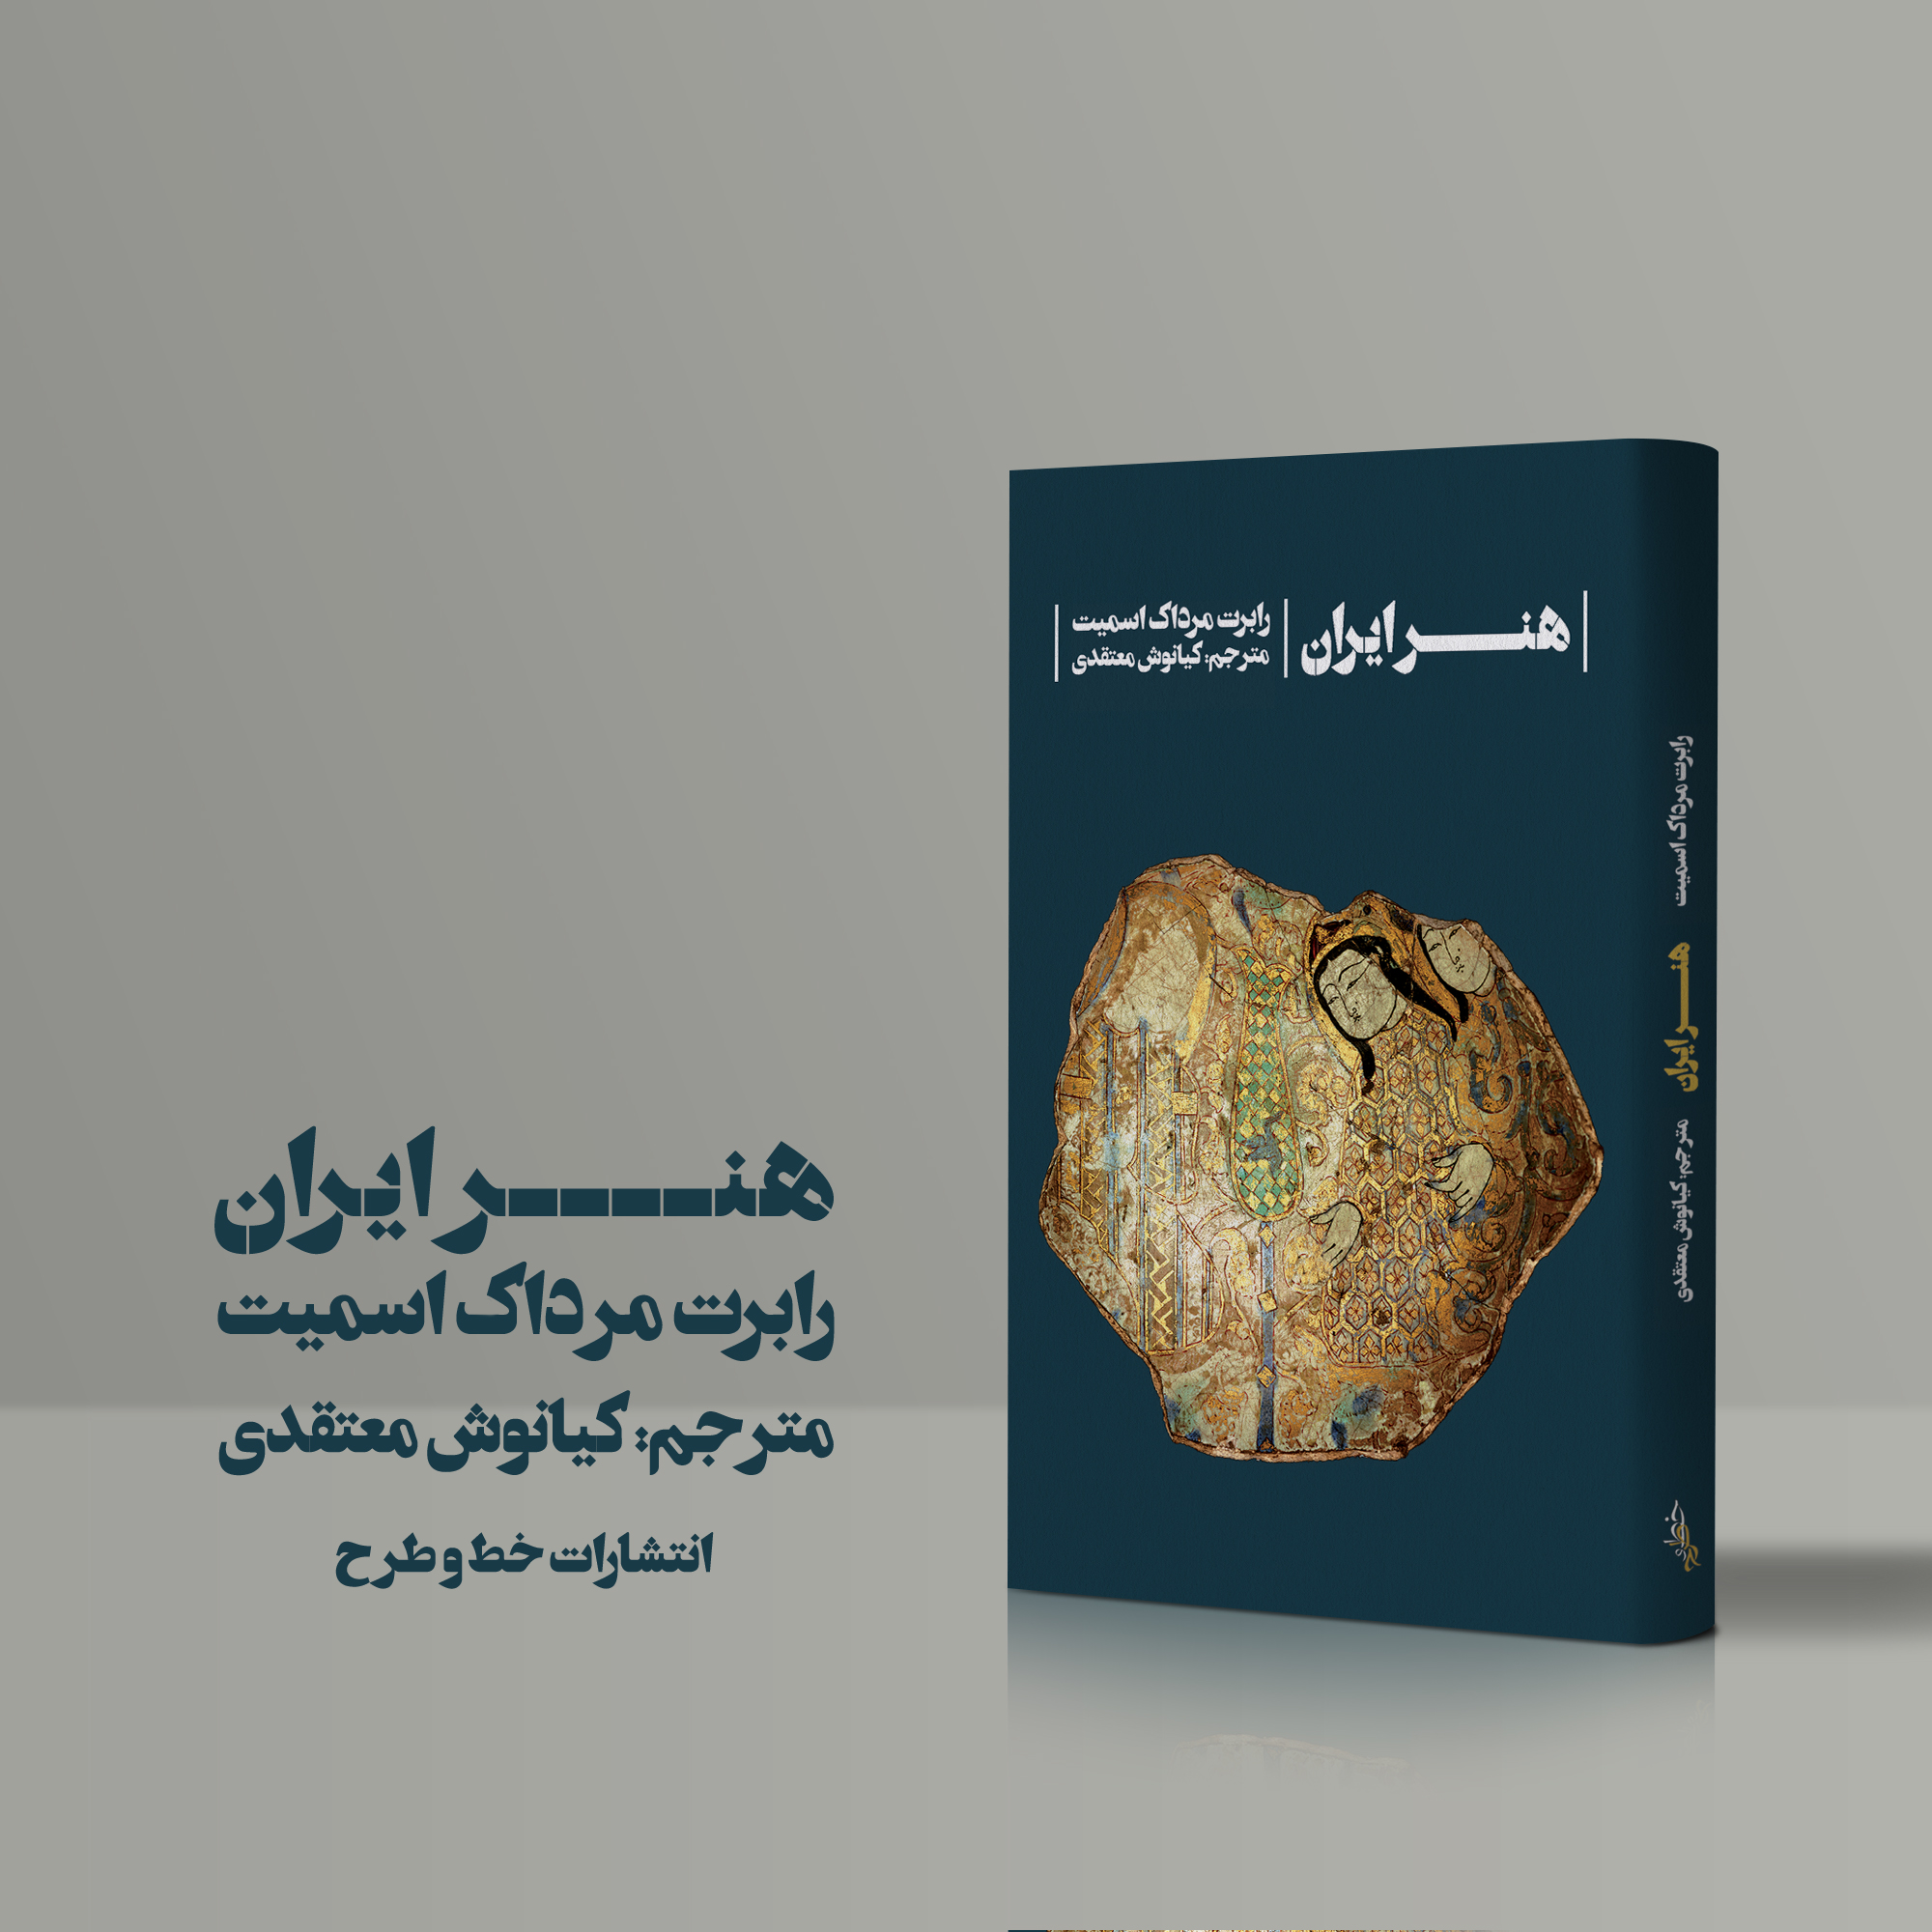 کتاب هنر ایران رابرت مرداک اسمیت ترجمه کیانوش معتقدی